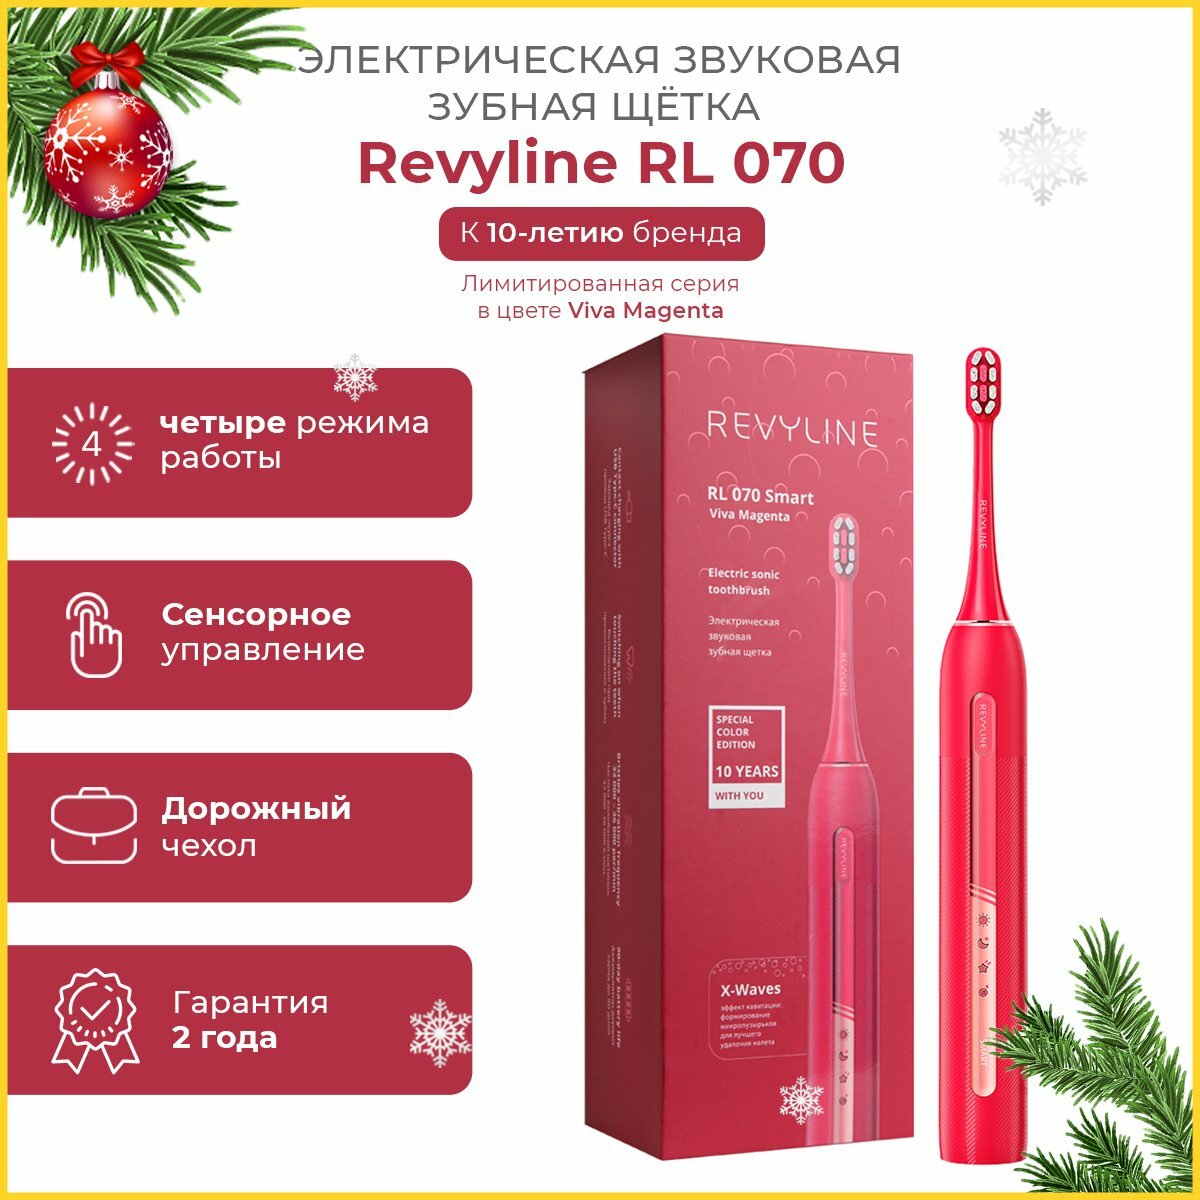 Электрическая зубная щетка Revyline RL 070,Spesial Color Edition